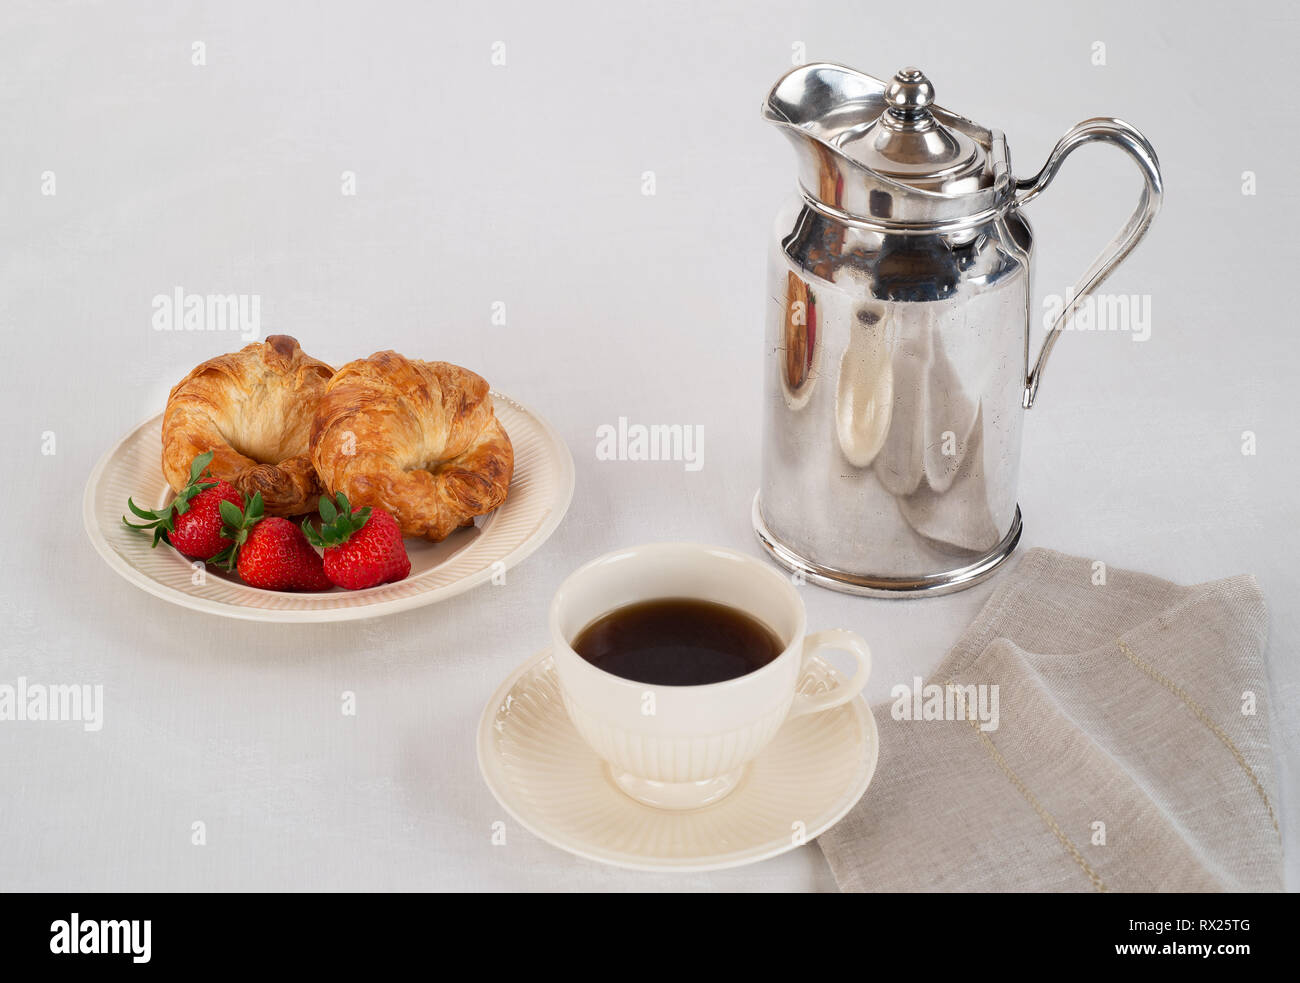 Le petit-déjeuner composé de croissants et des fraises avec du café. Banque D'Images